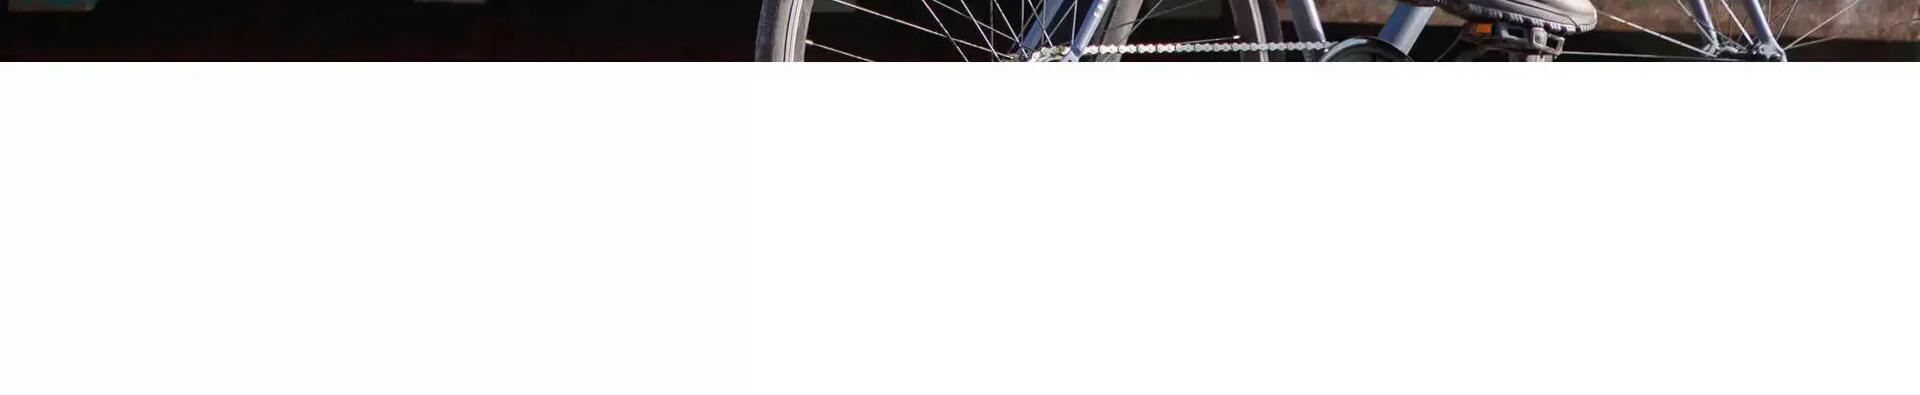 WEB_dsk,mob,tab_sadvi_int_TCI_2018_URBAN CYCLING[8500065]kiezen fietswielen stadsfiets